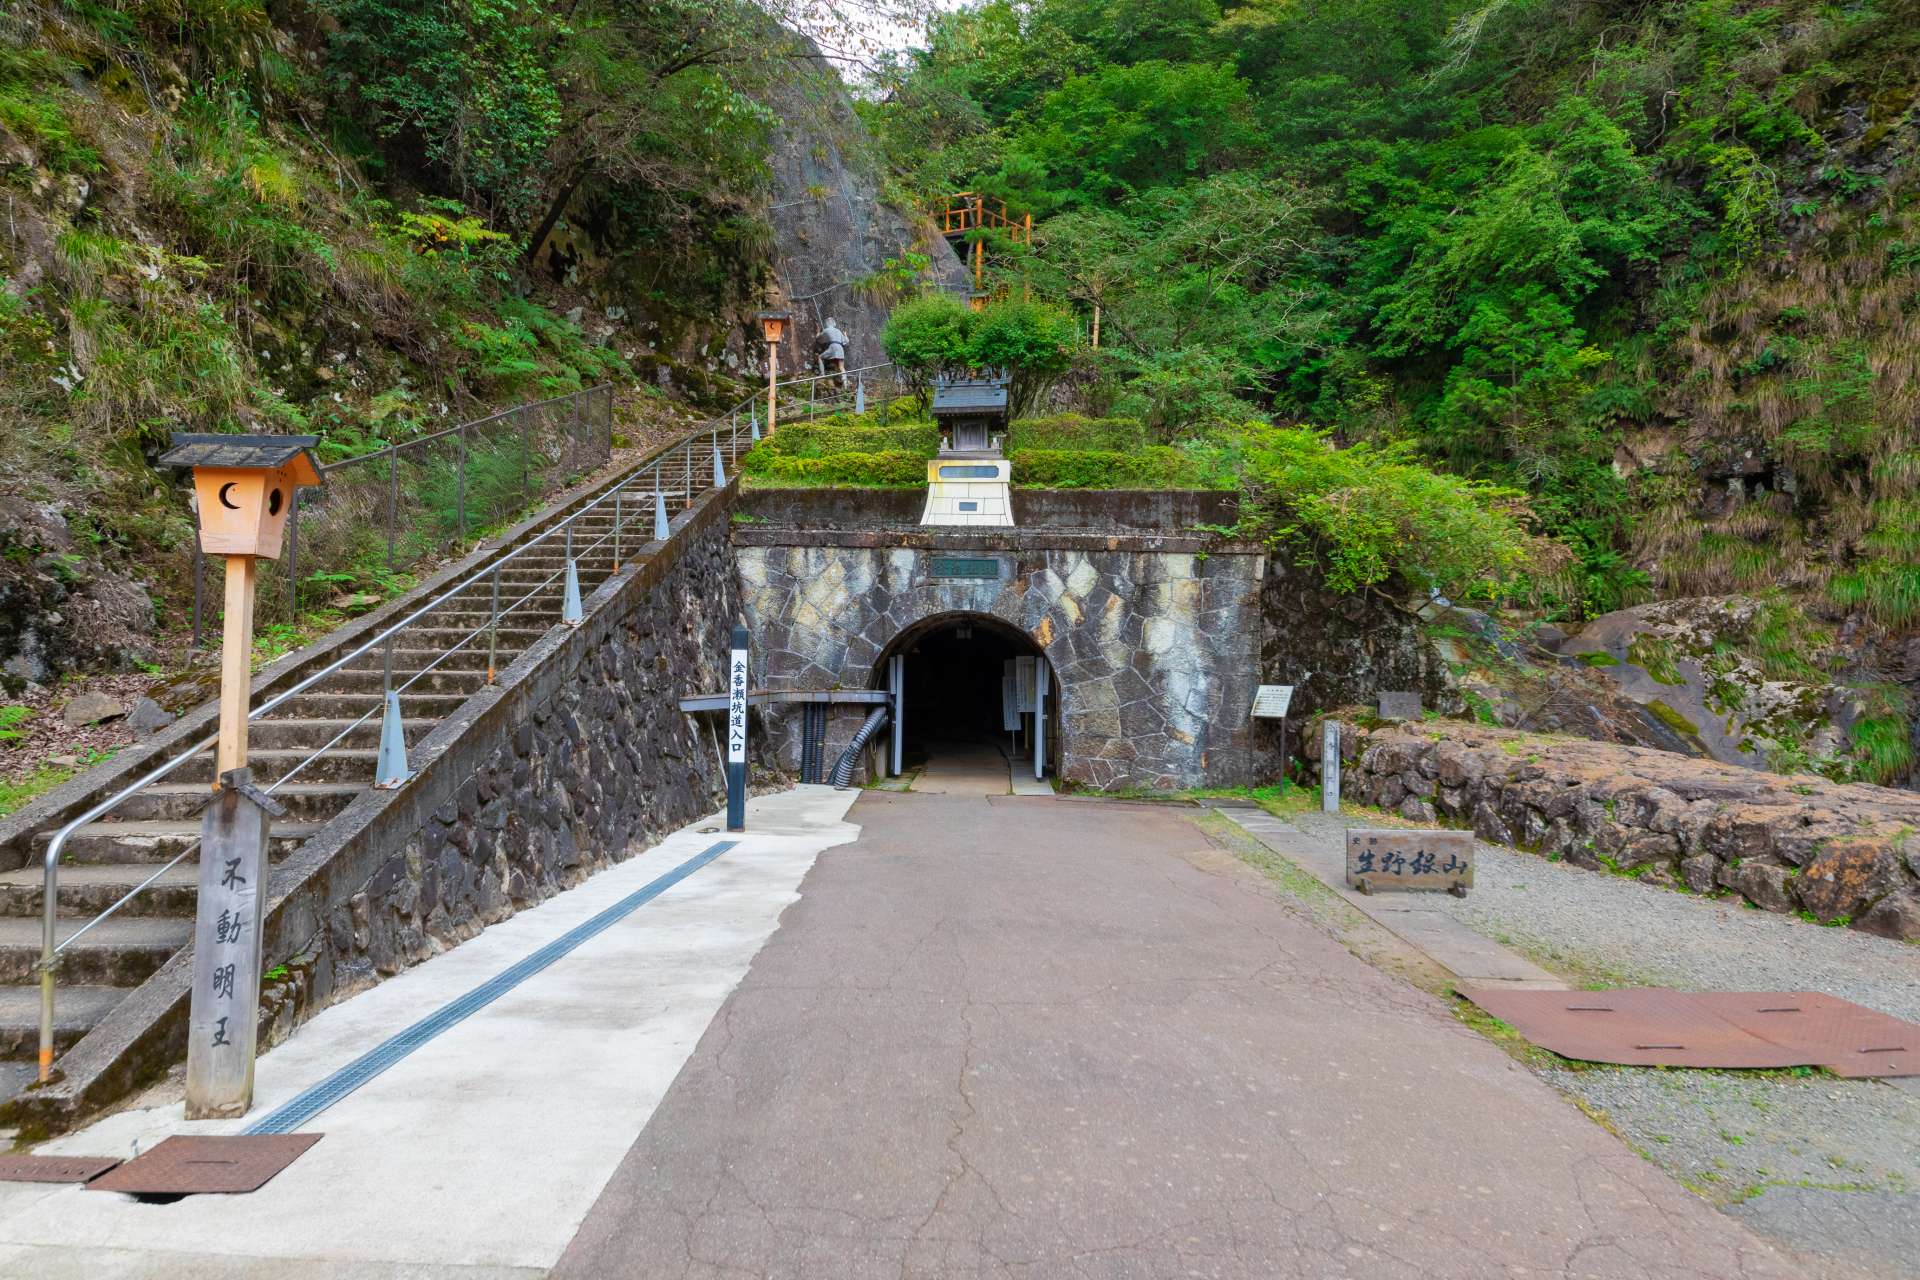 Depuis l'entrée avec l'arche à la française, un parcours de 1 000 m s'étire dans le tunnel, soit environ 40 min de parcours.